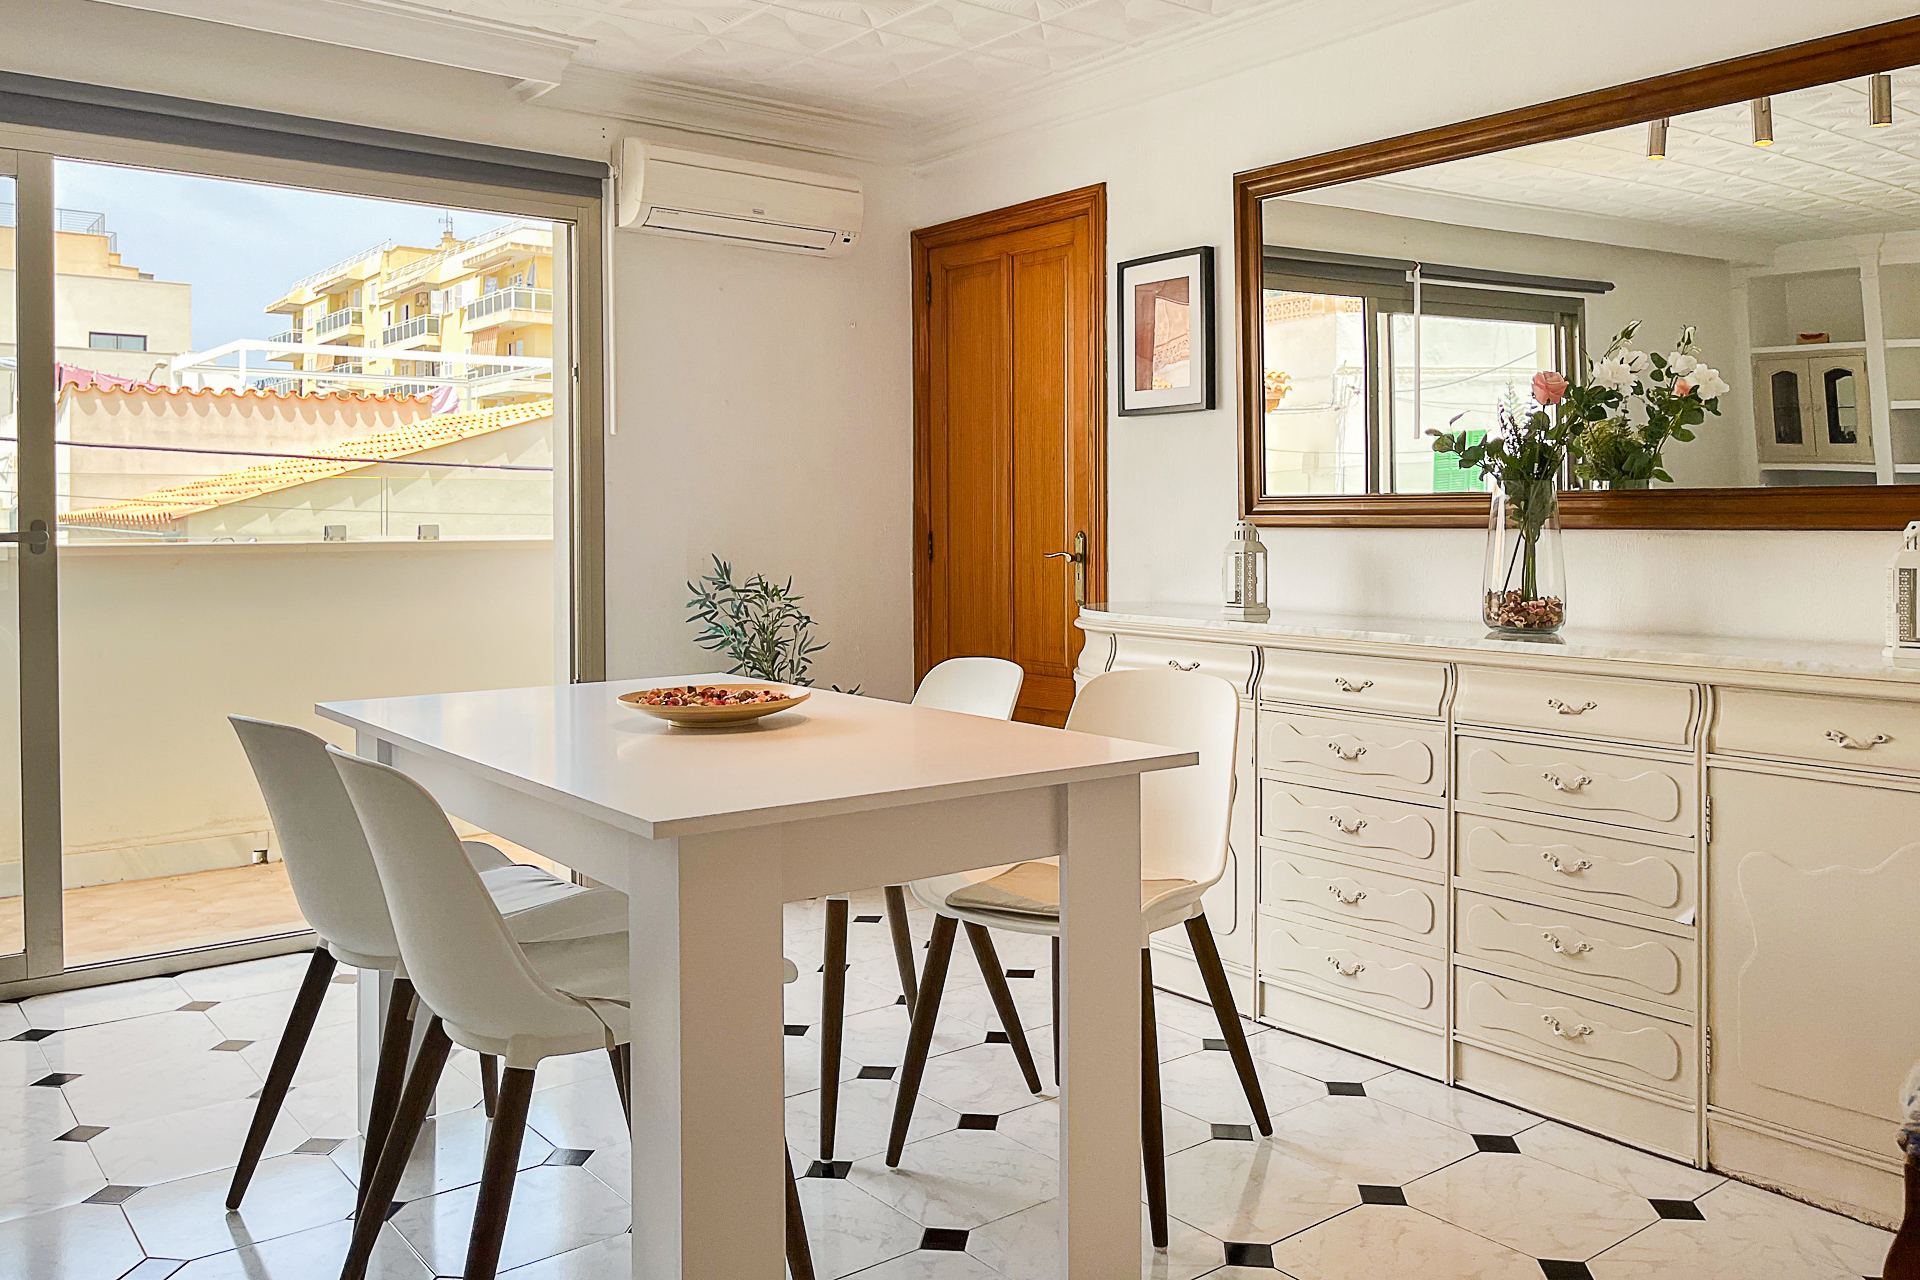 Frisch renovierte Maisonette-Wohnung mit Dachterrasse und Grillecke im 1. OG, 07590 Cala Ratjada (Spanien), Maisonettewohnung